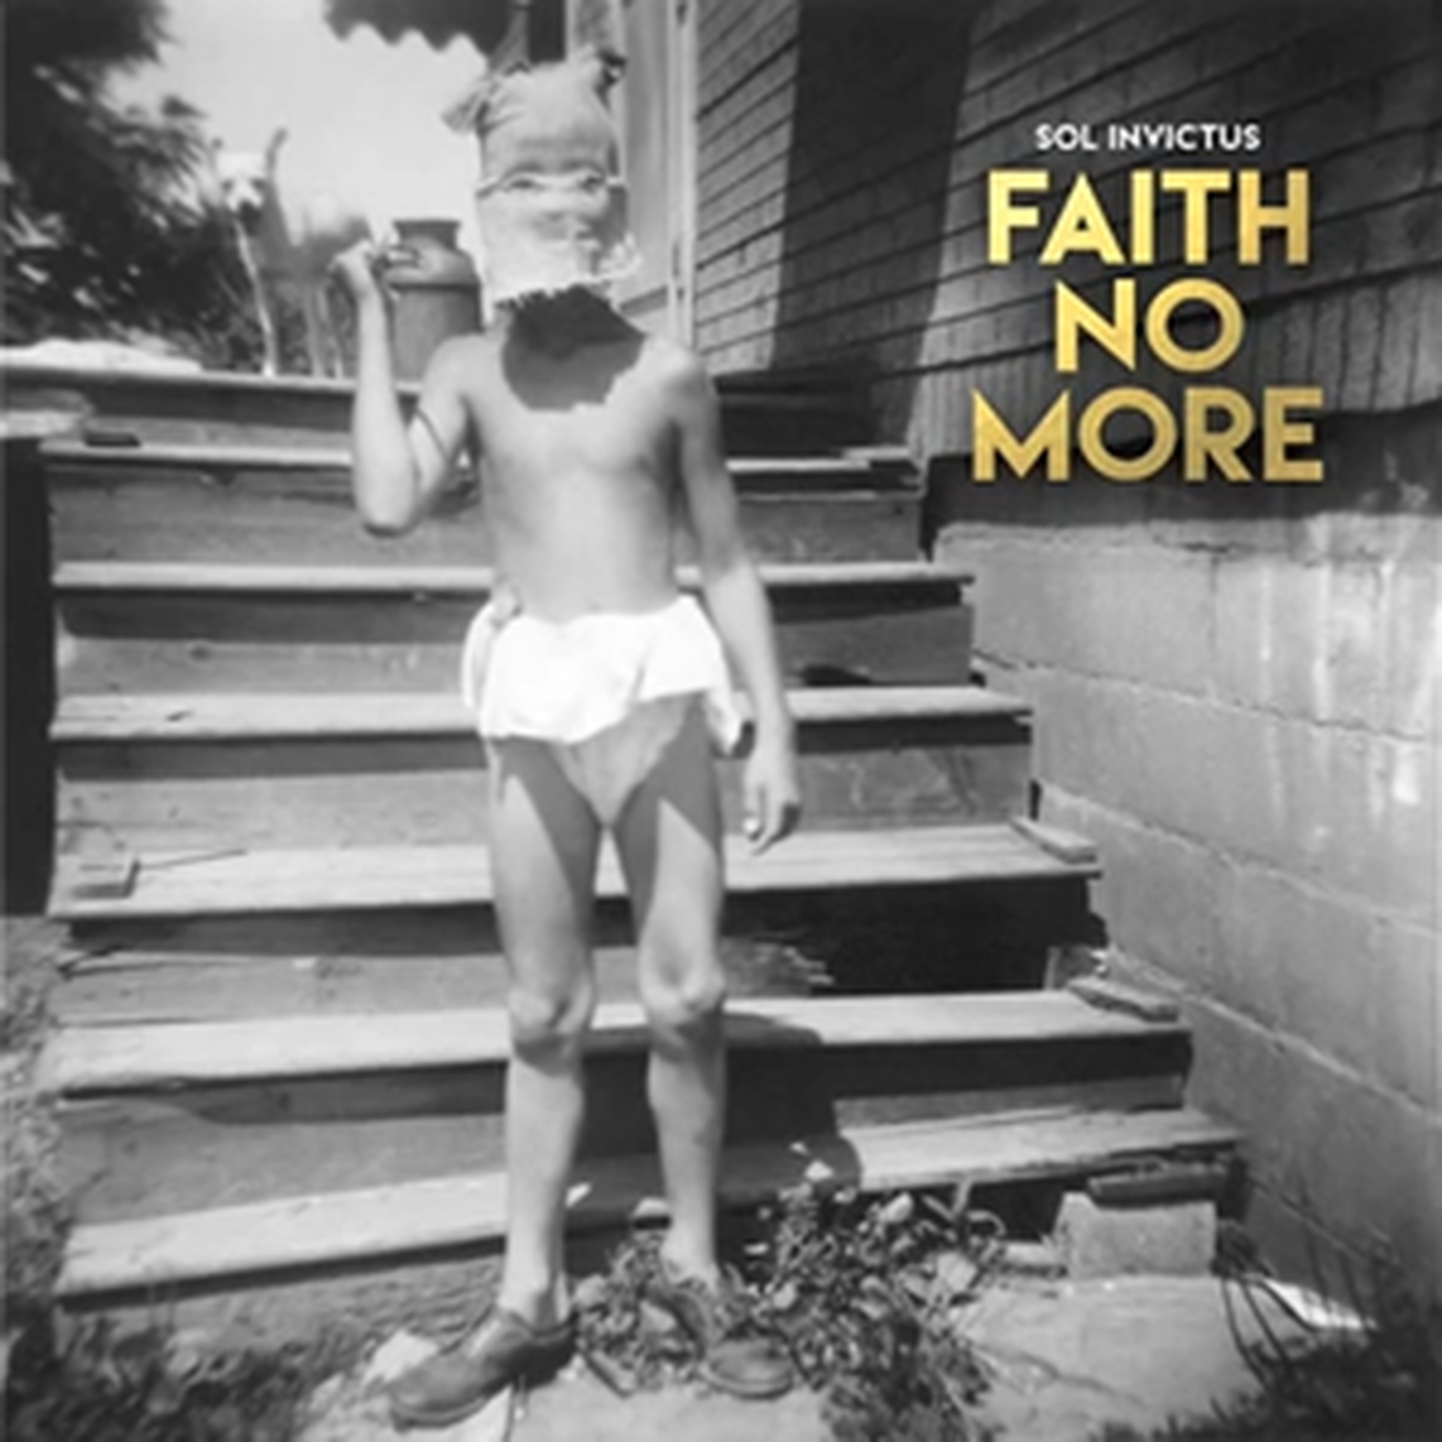 Faith No More- Sol Invictus